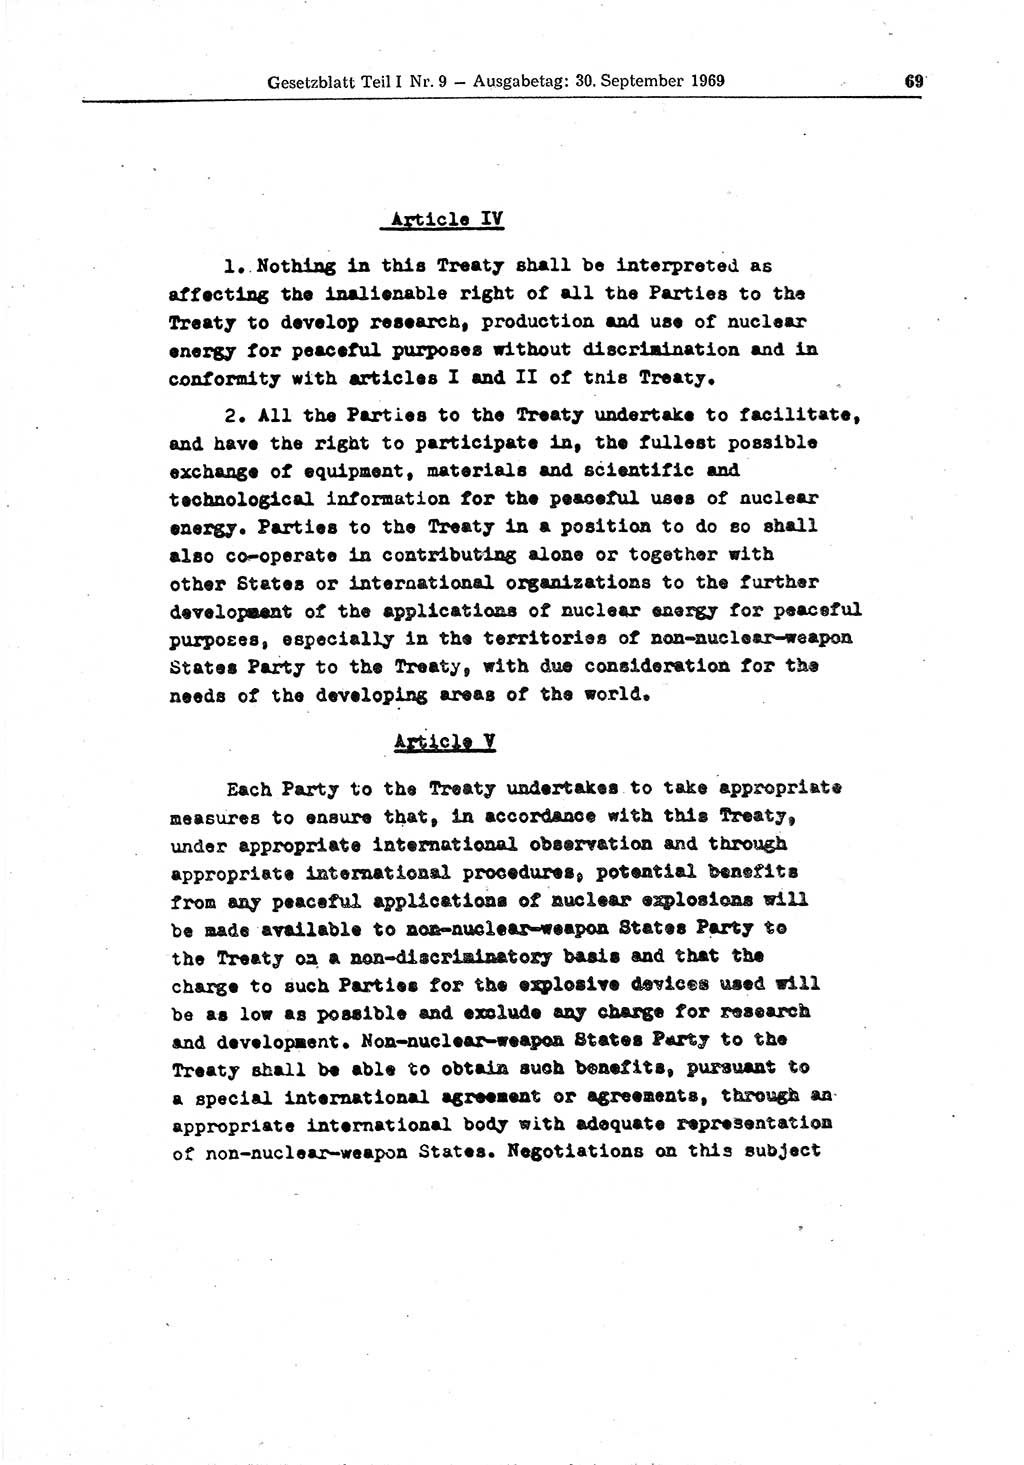 Gesetzblatt (GBl.) der Deutschen Demokratischen Republik (DDR) Teil Ⅰ 1969, Seite 69 (GBl. DDR Ⅰ 1969, S. 69)